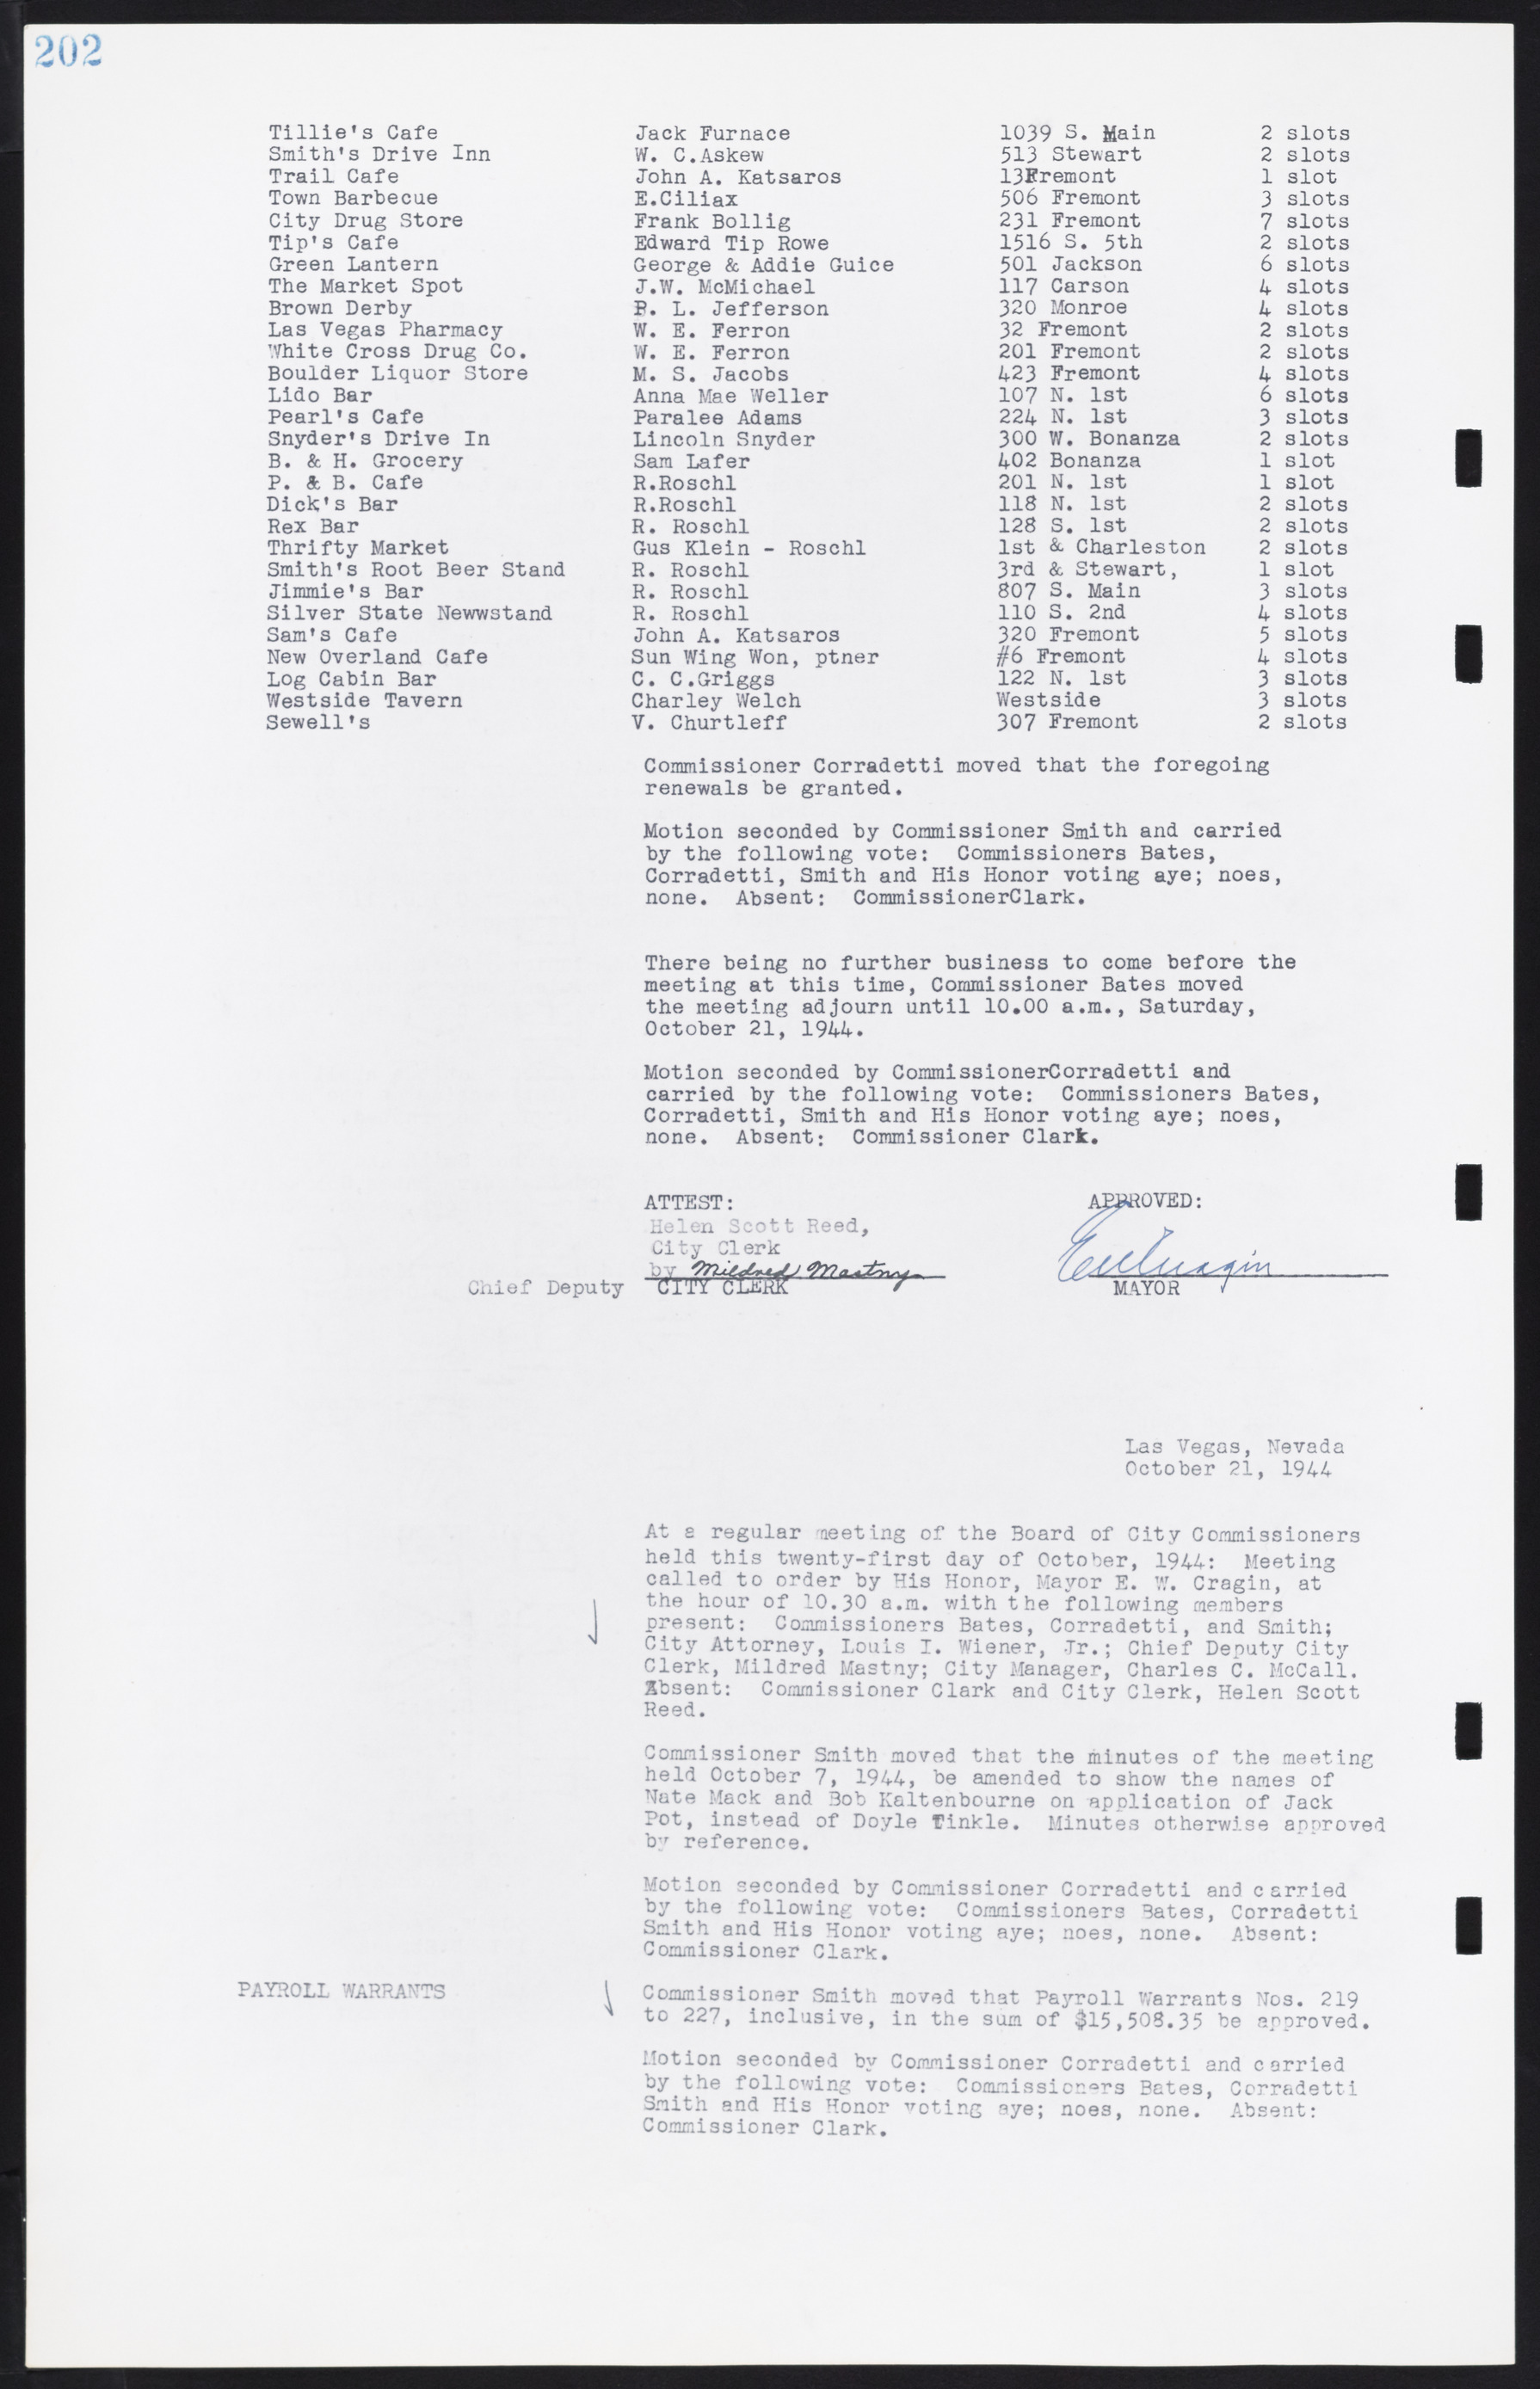 Las Vegas City Commission Minutes, August 11, 1942 to December 30, 1946, lvc000005-221